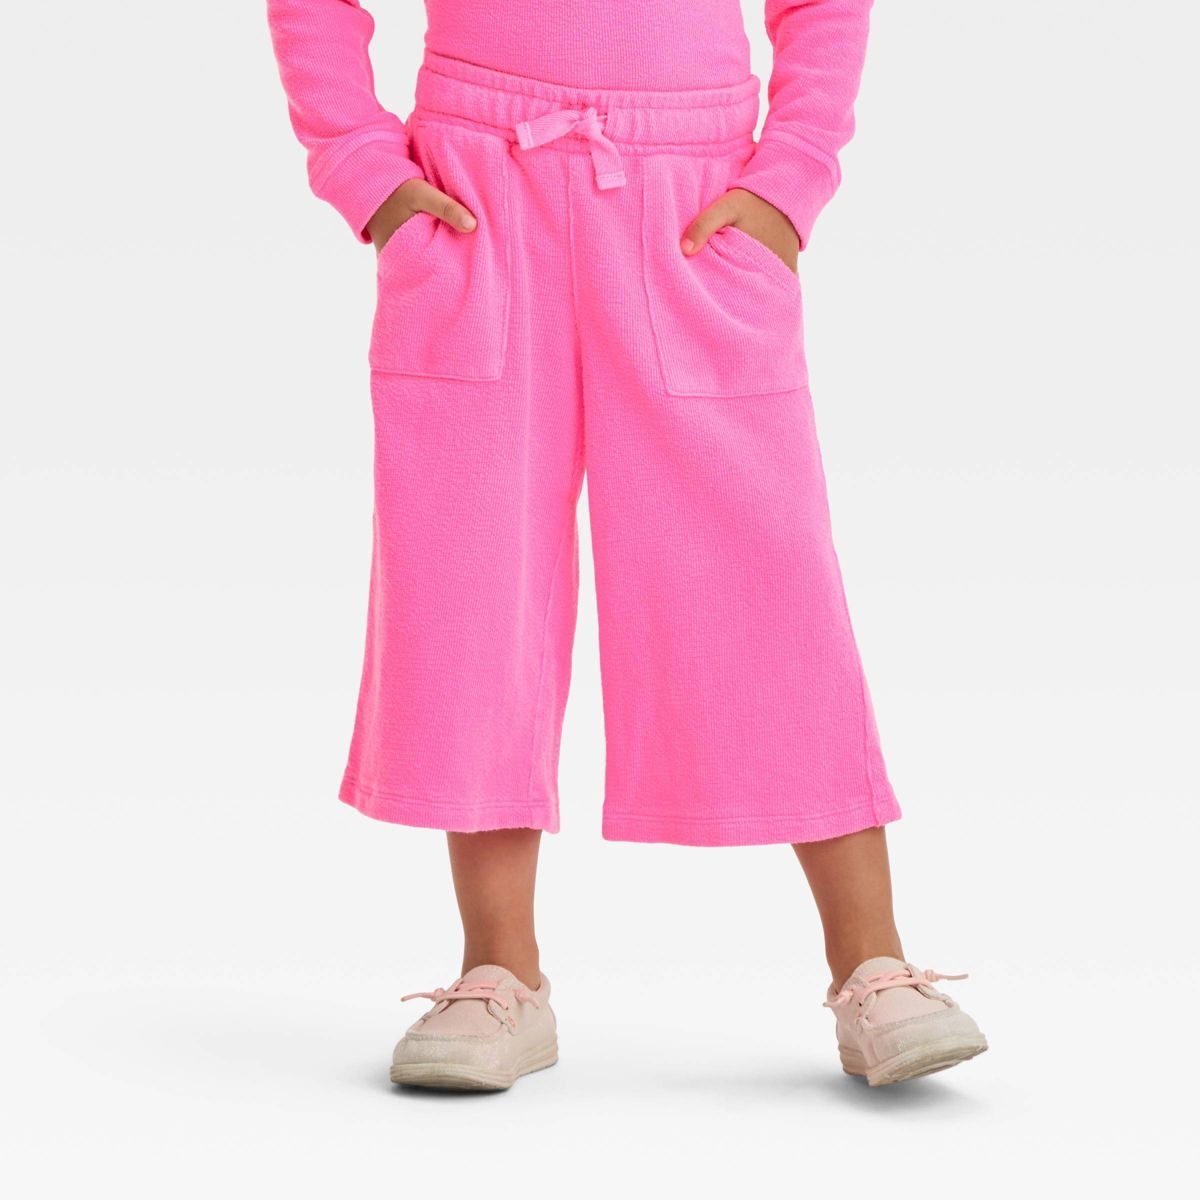 Toddler Girls' Pants - Cat & Jack™ Neon Pink 3T | Target